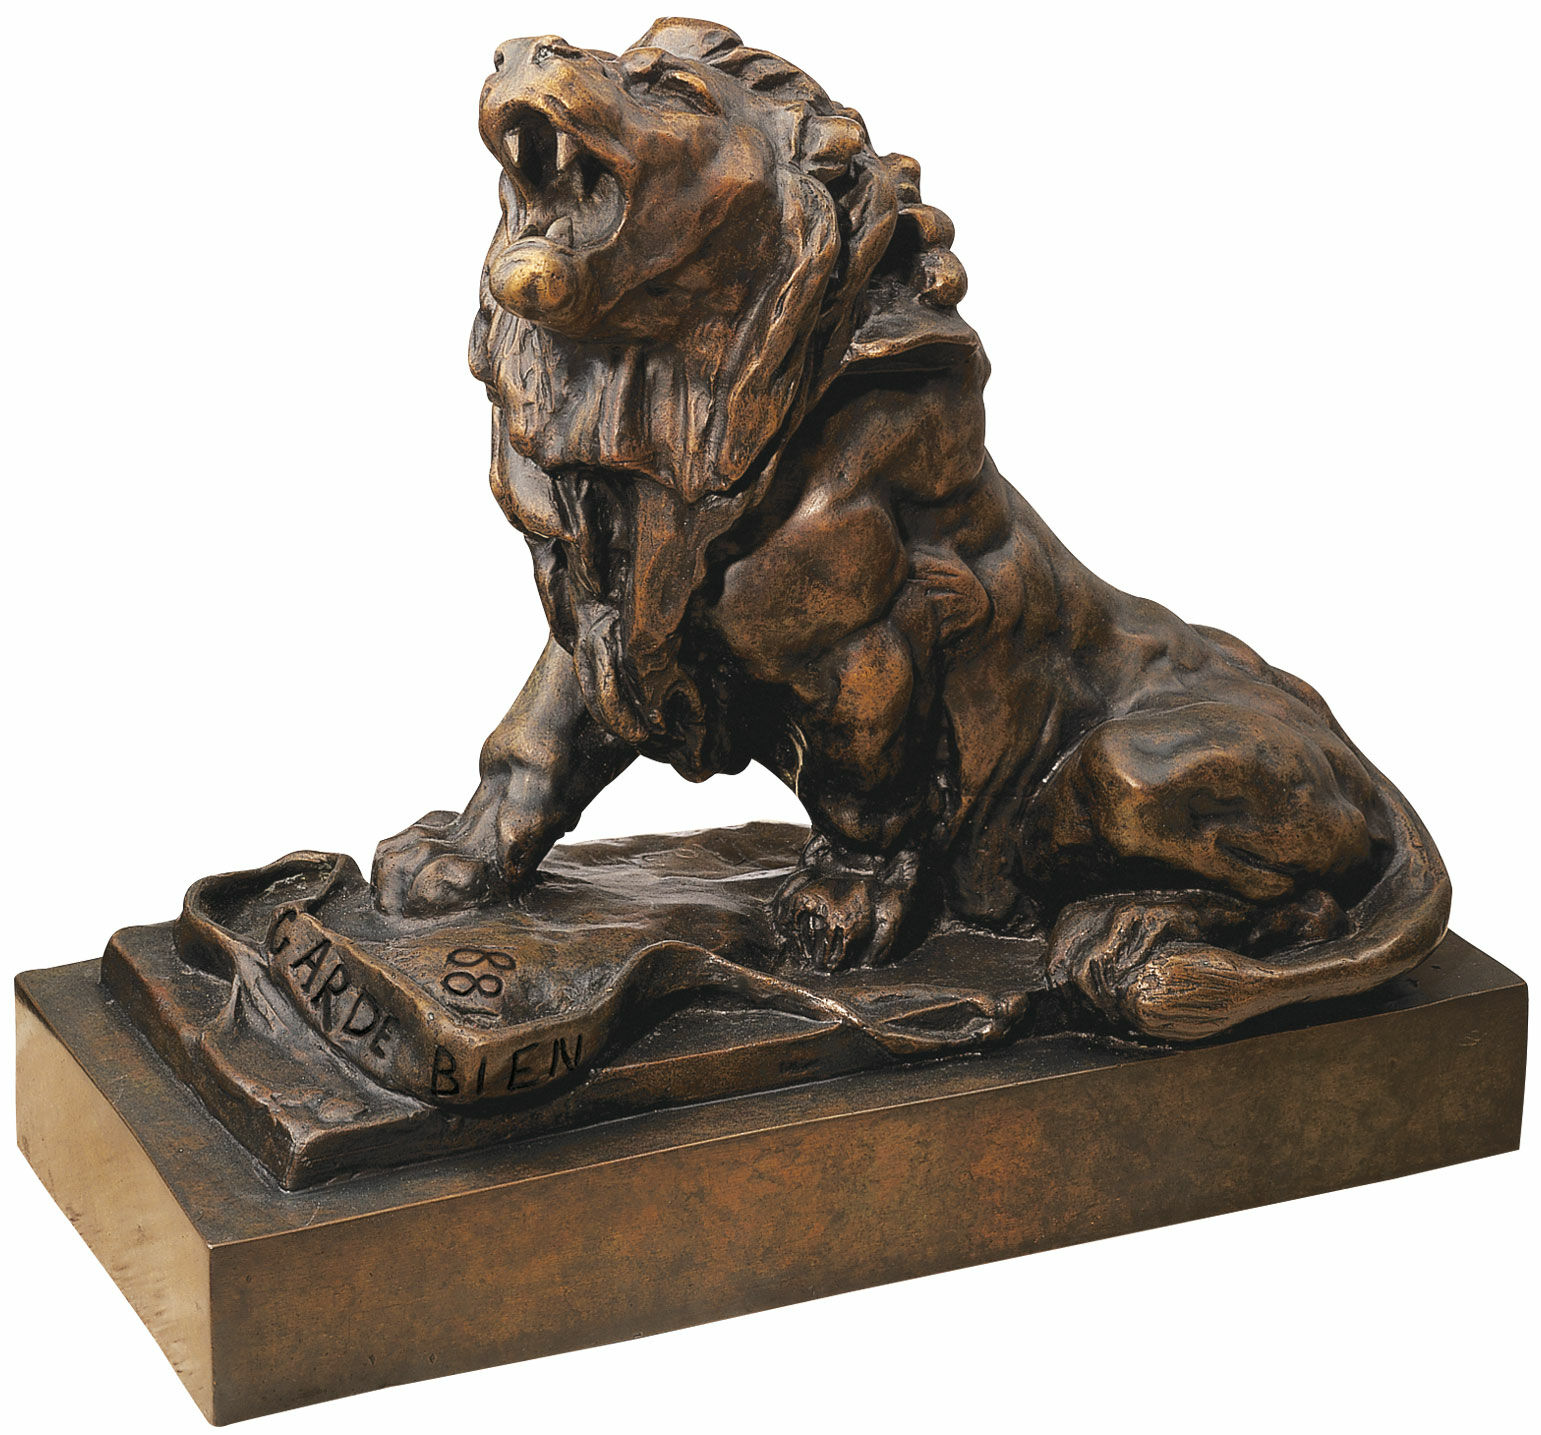 Skulptur "Der weinende Löwe" (Le lion qui pleure), Version in Kunstbronze von Auguste Rodin